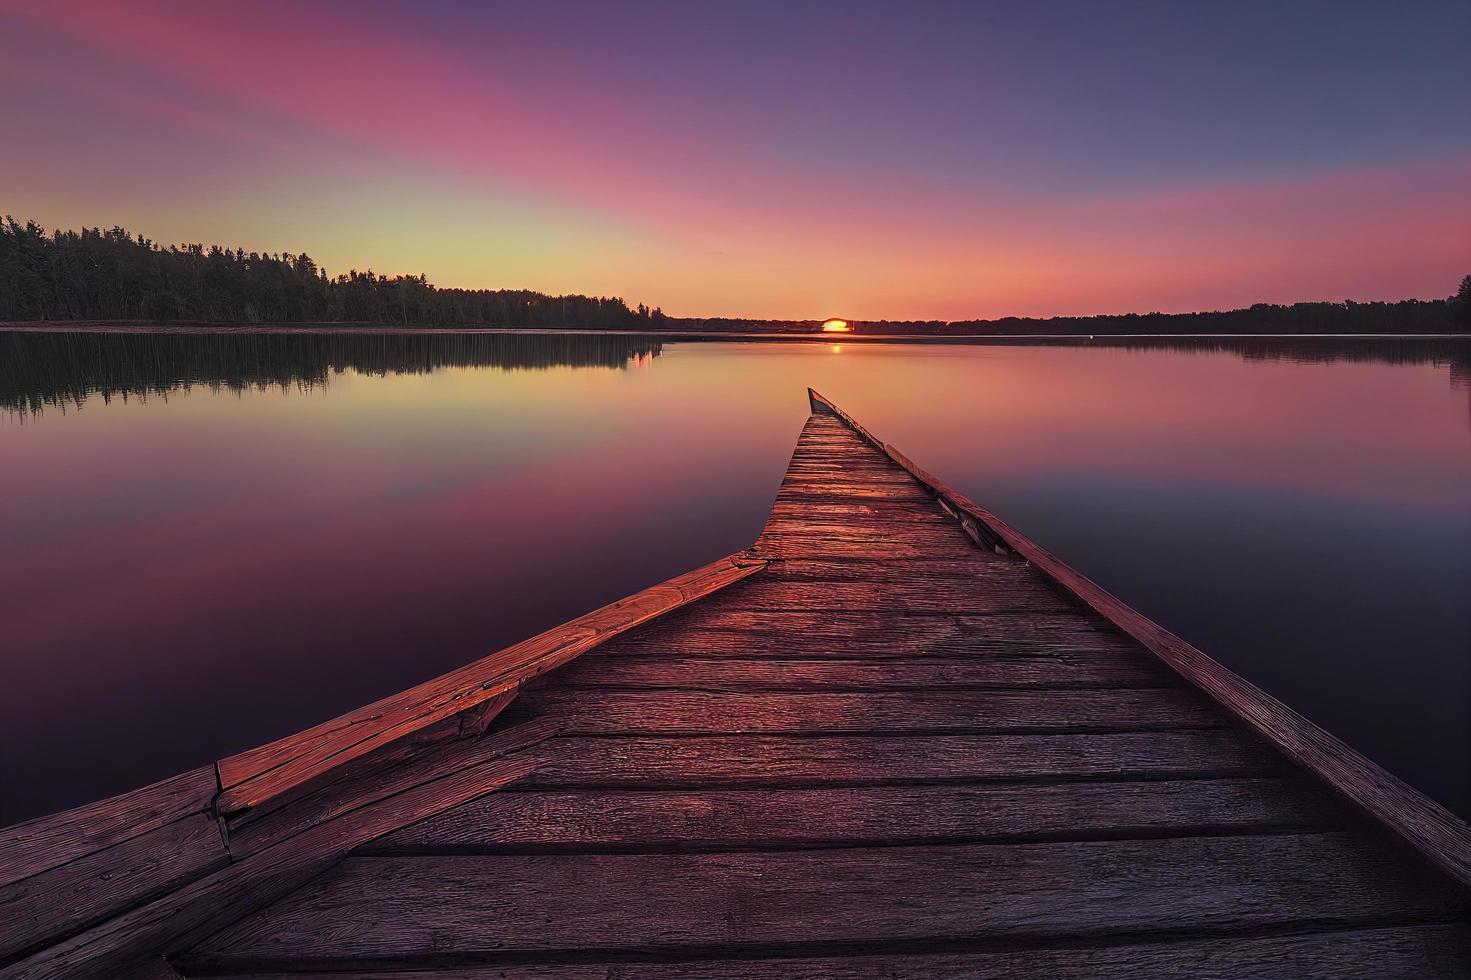 muelle de madera colorido en un lago que está totalmente tranquilo durante la puesta de sol foto